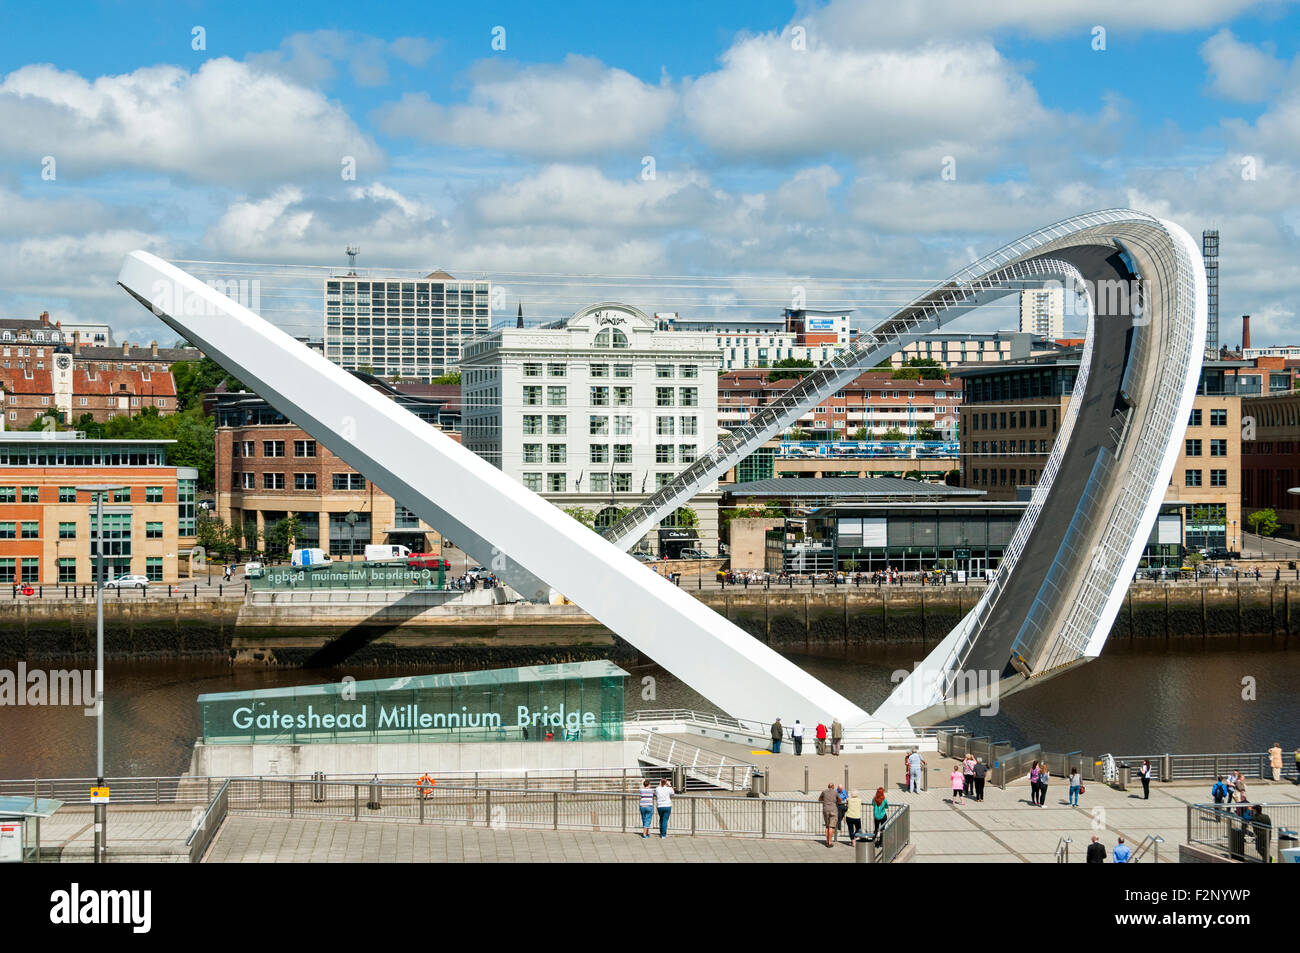 Il Gateshead Millennium Bridge, fiume Tyne, Newcastle-Gateshead, Tyne & Wear, Inghilterra, Regno Unito. Completamente in posizione inclinata. Foto Stock